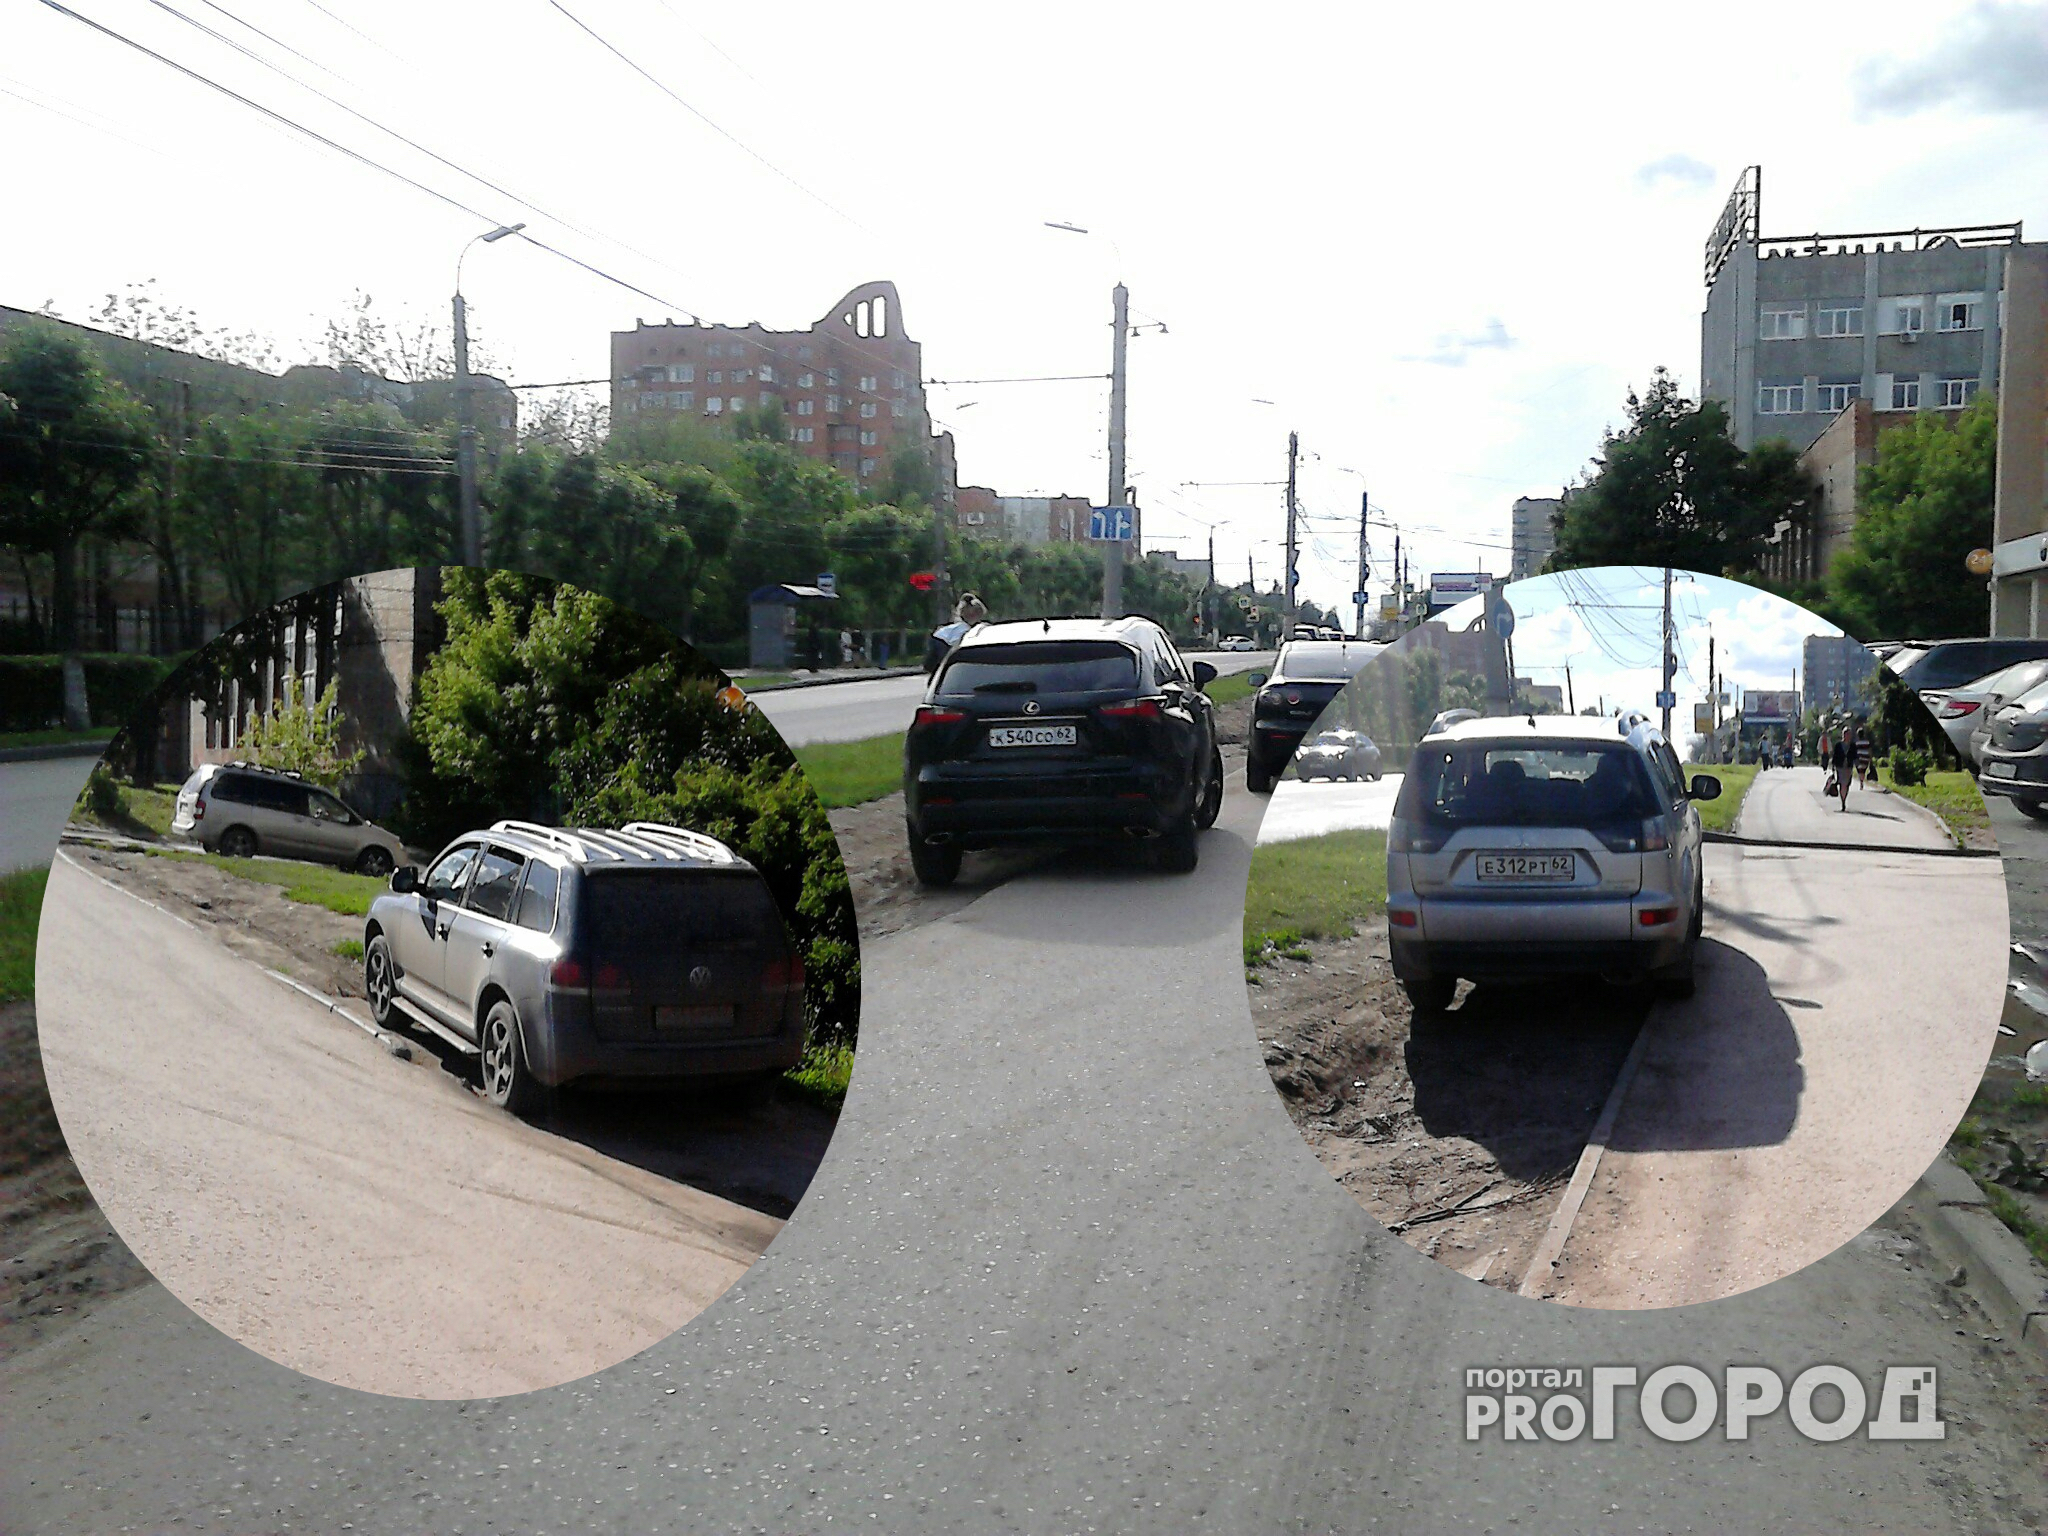 Автомобиль против пешехода - кто имеет преимущество на участке улицы Крупской непонятно